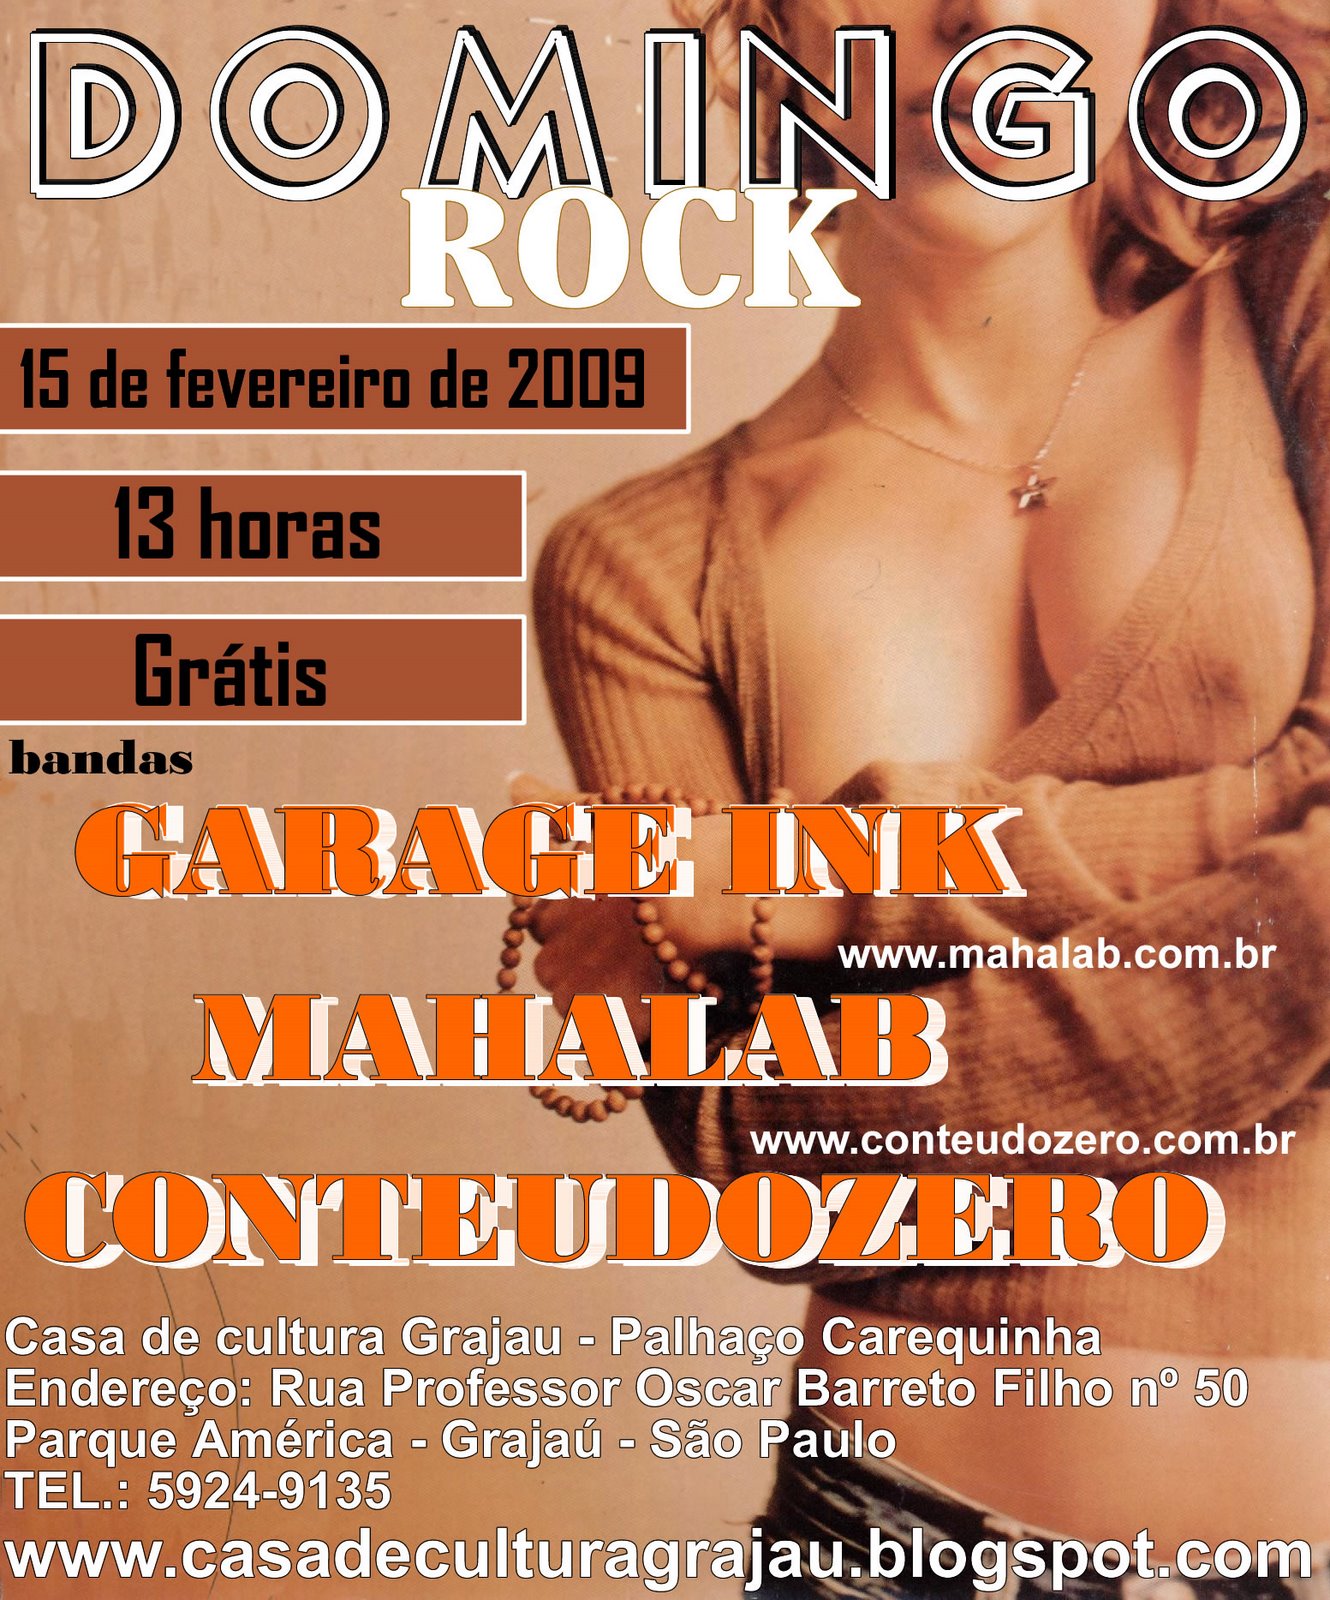 [Domingo+rock.jpg]